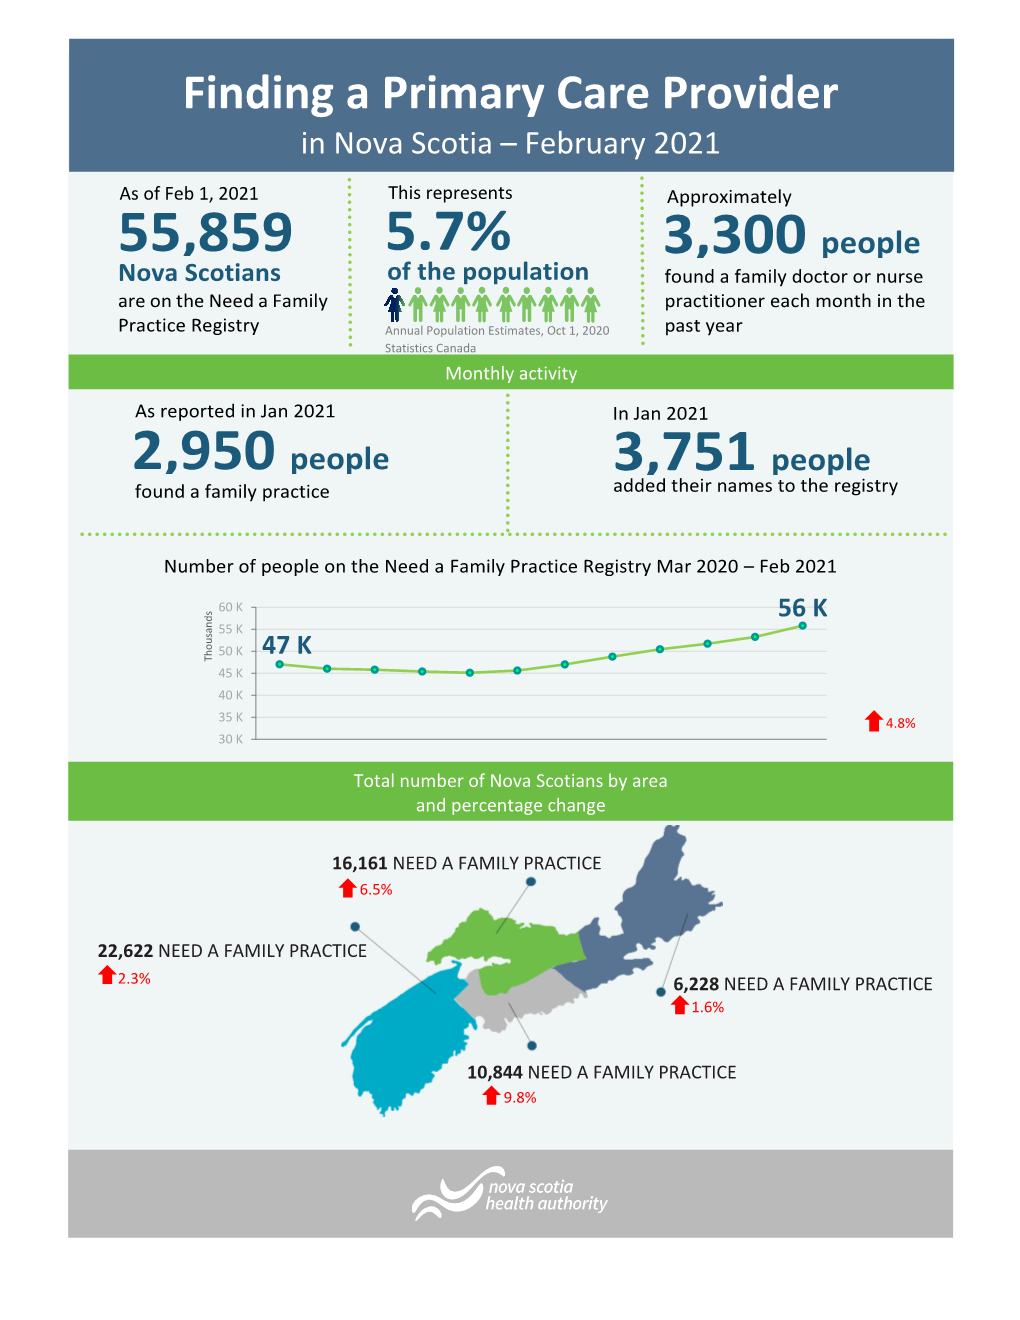 Finding a Primary Care Provider in Nova Scotia – February 2021